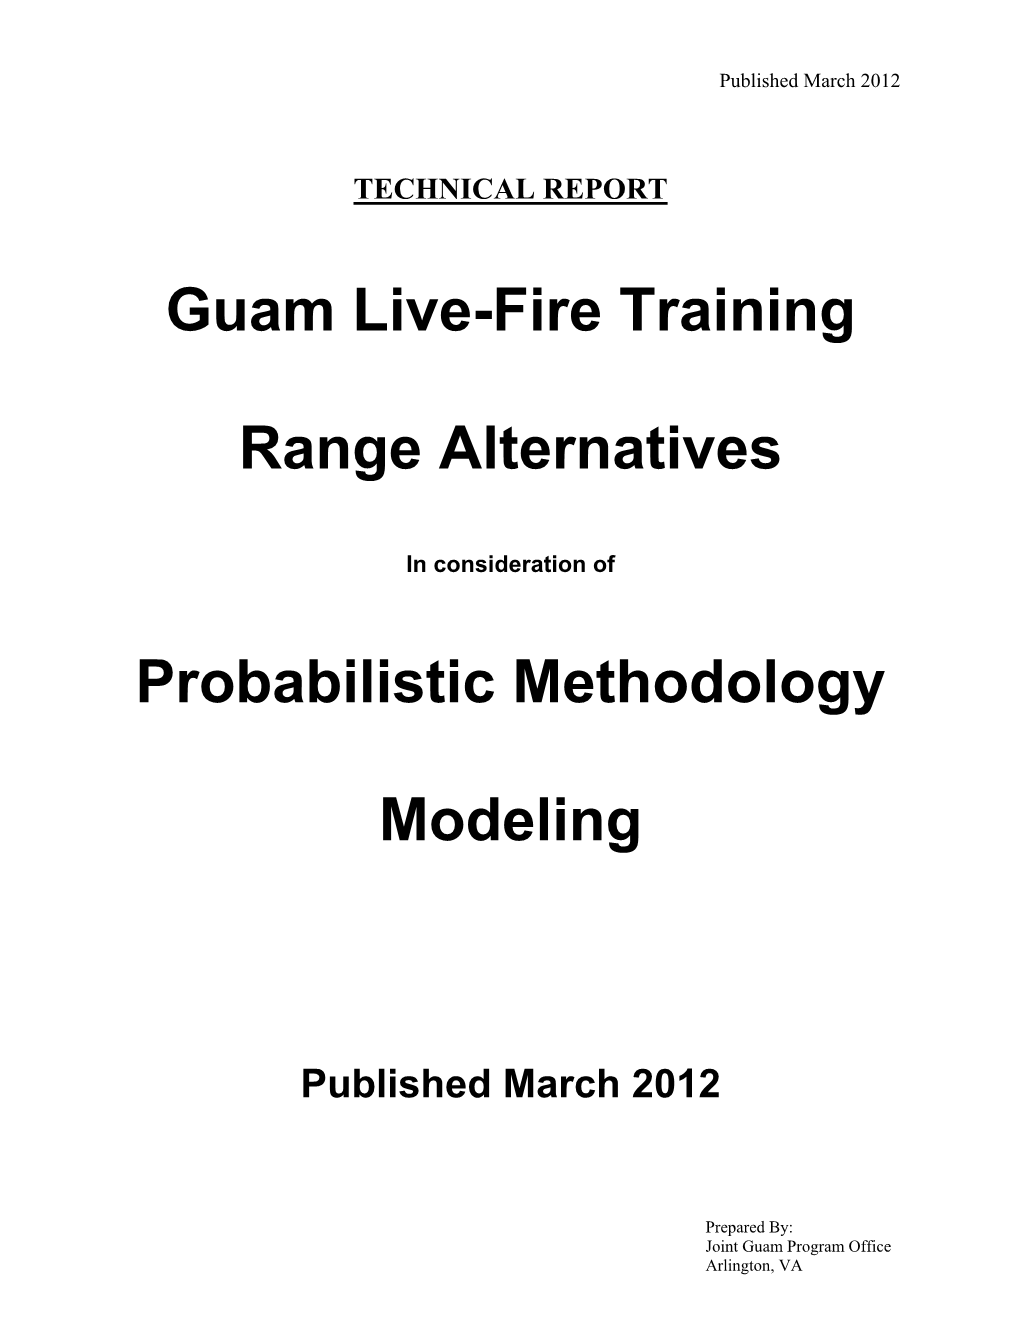 Guam Live-Fire Training Range Alternatives Probabilistic Methodology Modeling